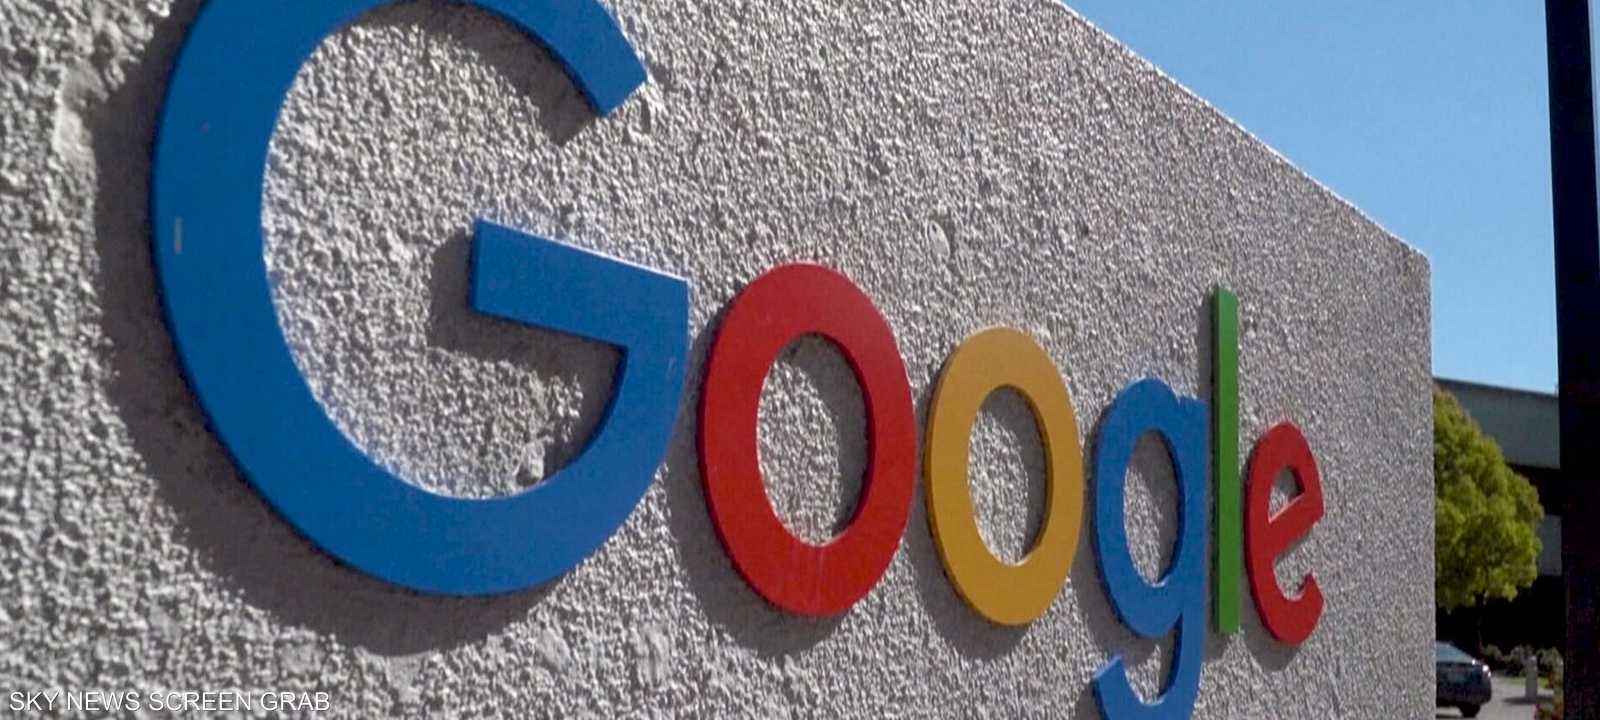 أميركا تستهدف احتكار غوغل لنشاط للإعلانات الرقمية في دعوى قض